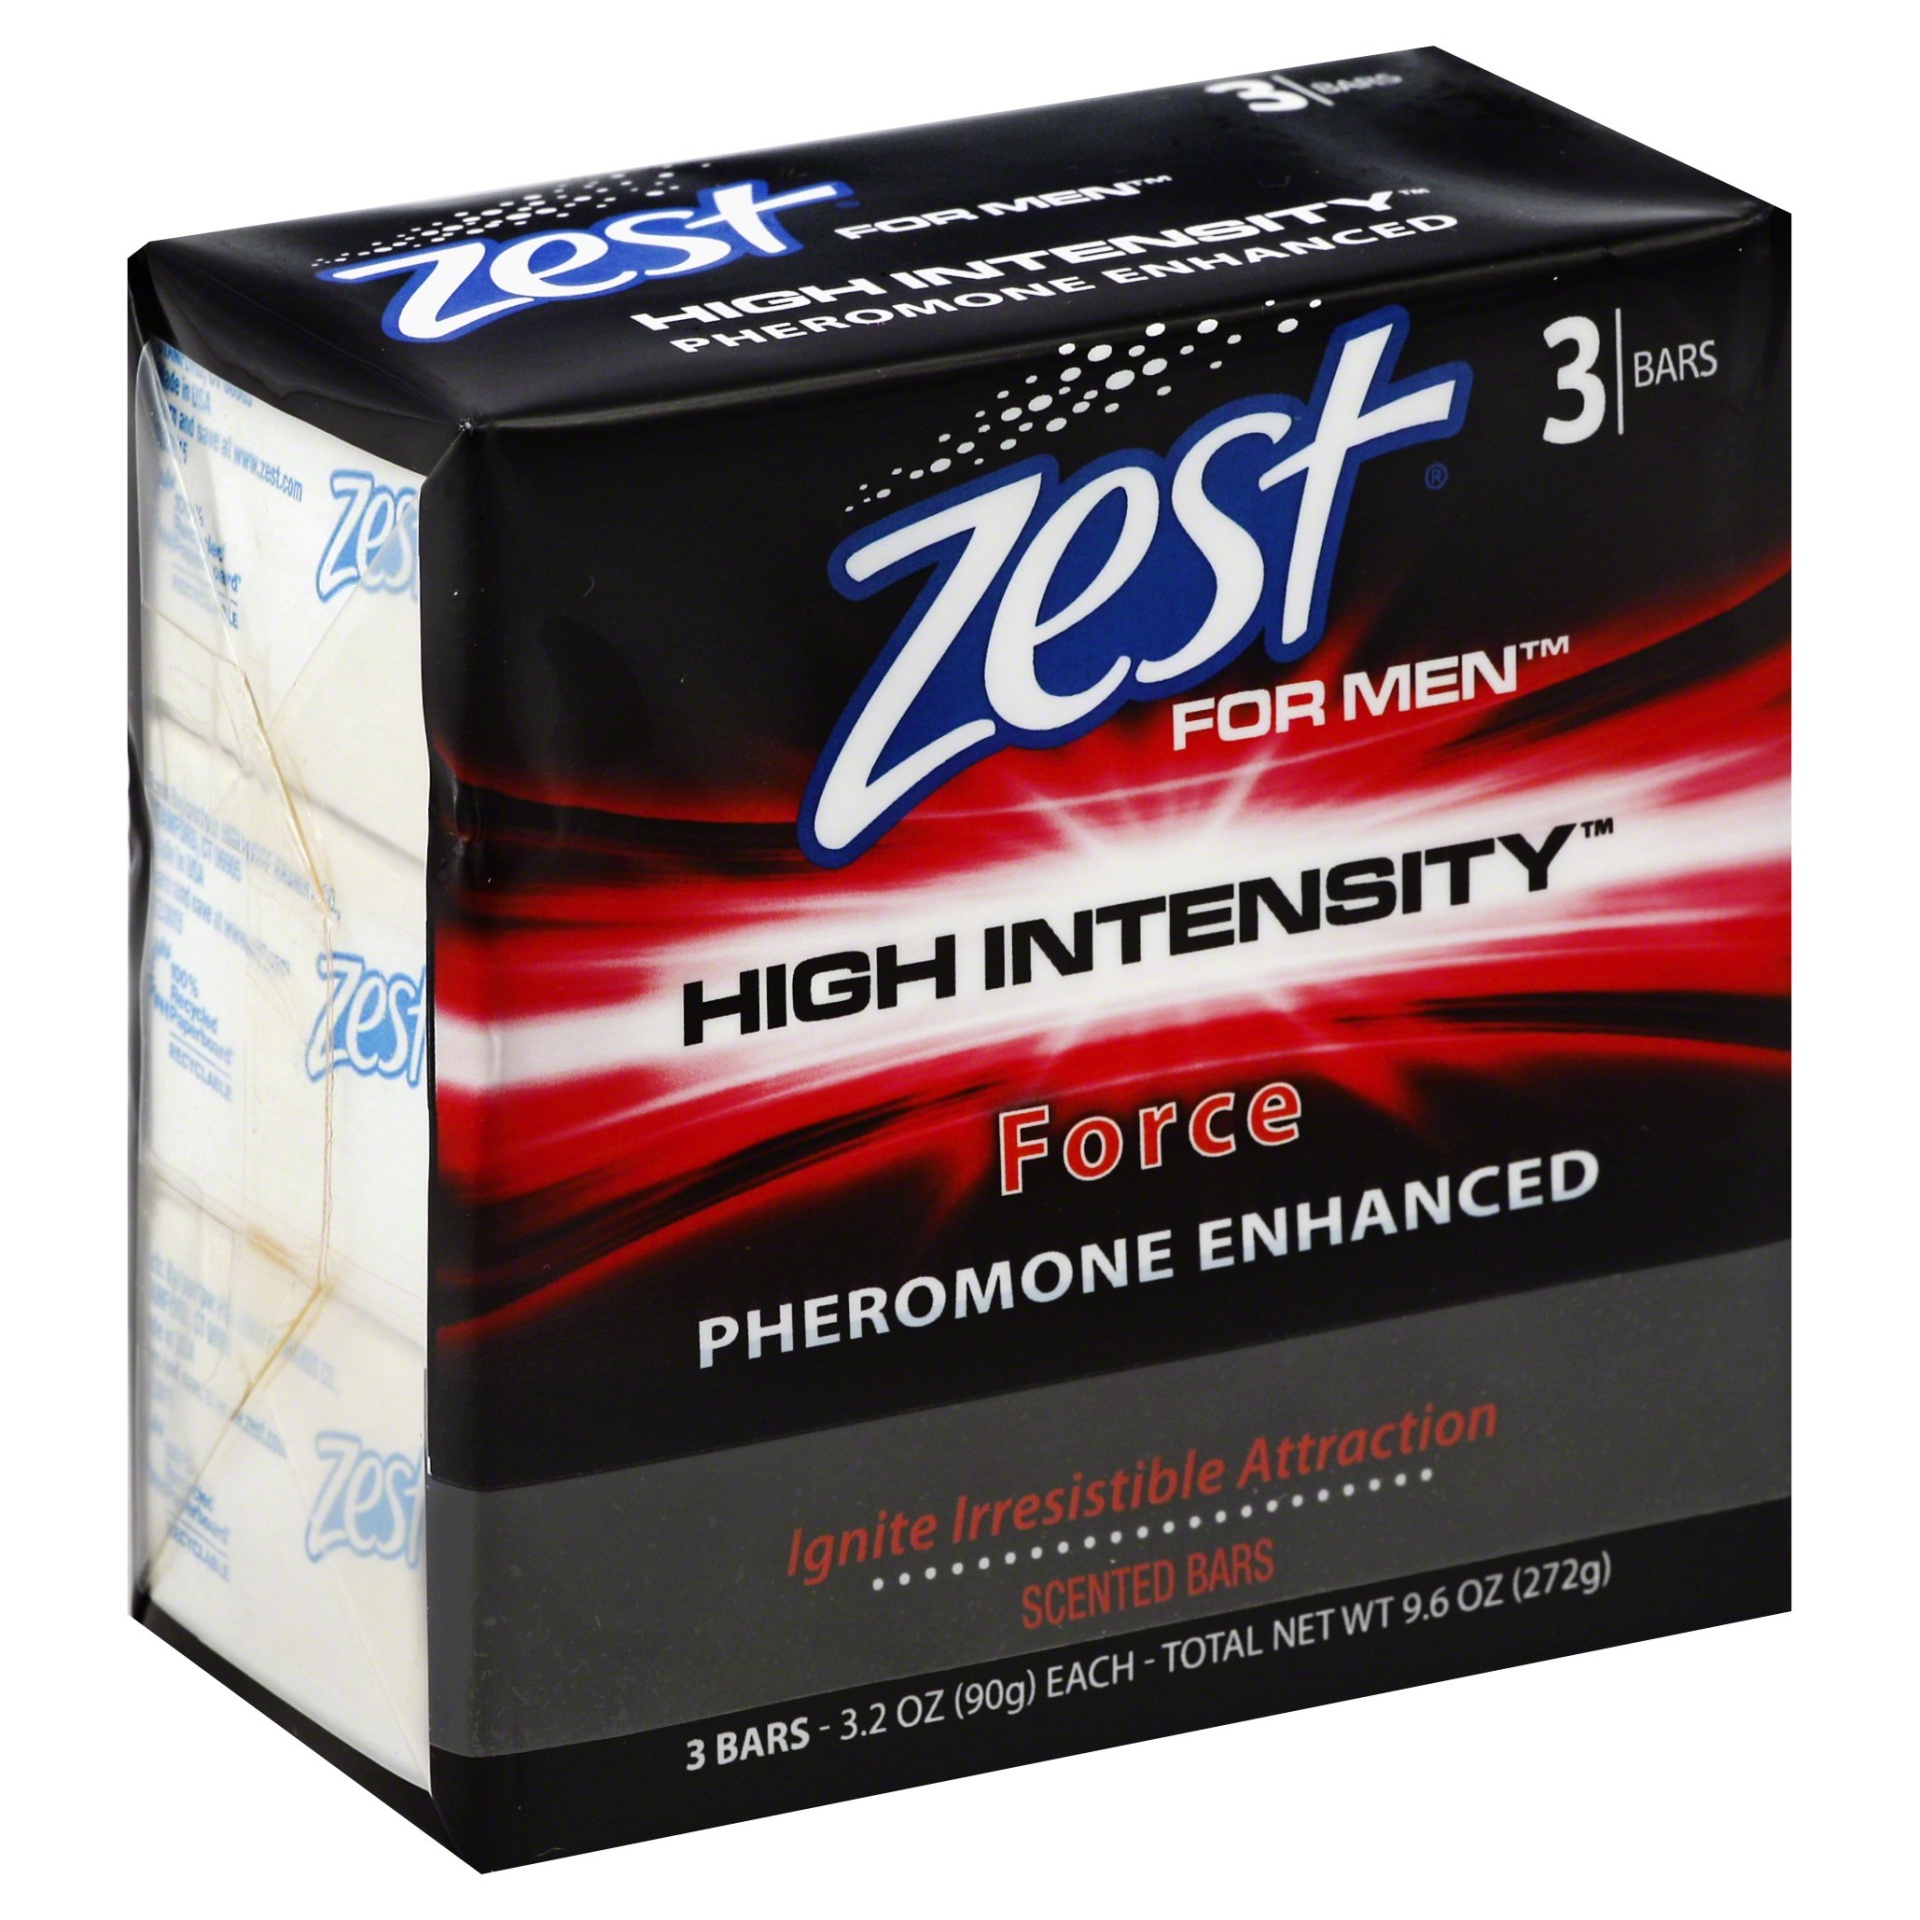 slide 1 of 4, High Ridge Brands Co. Zest 3Bar High Intensity Force, 3 ct; 3.2 oz